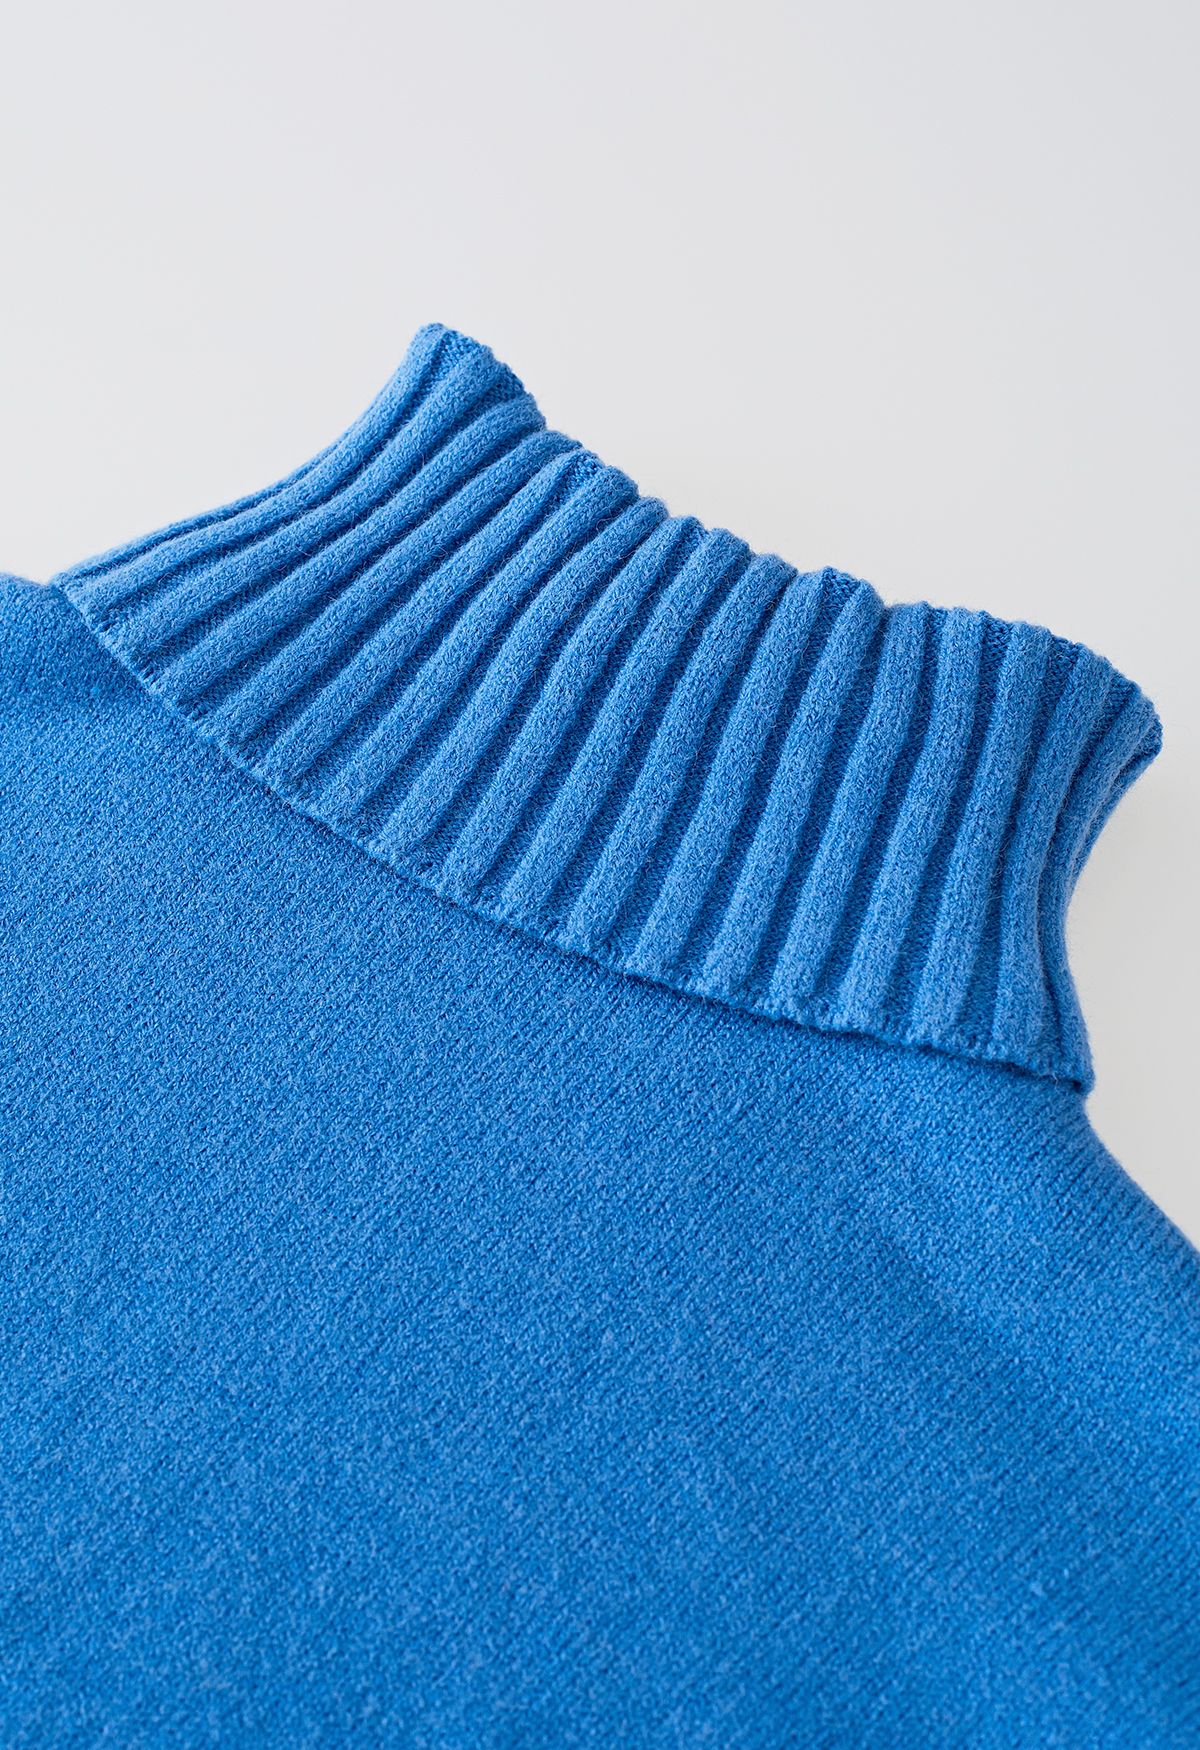 Conjunto de suéter de gola alta e calça de malha em azul